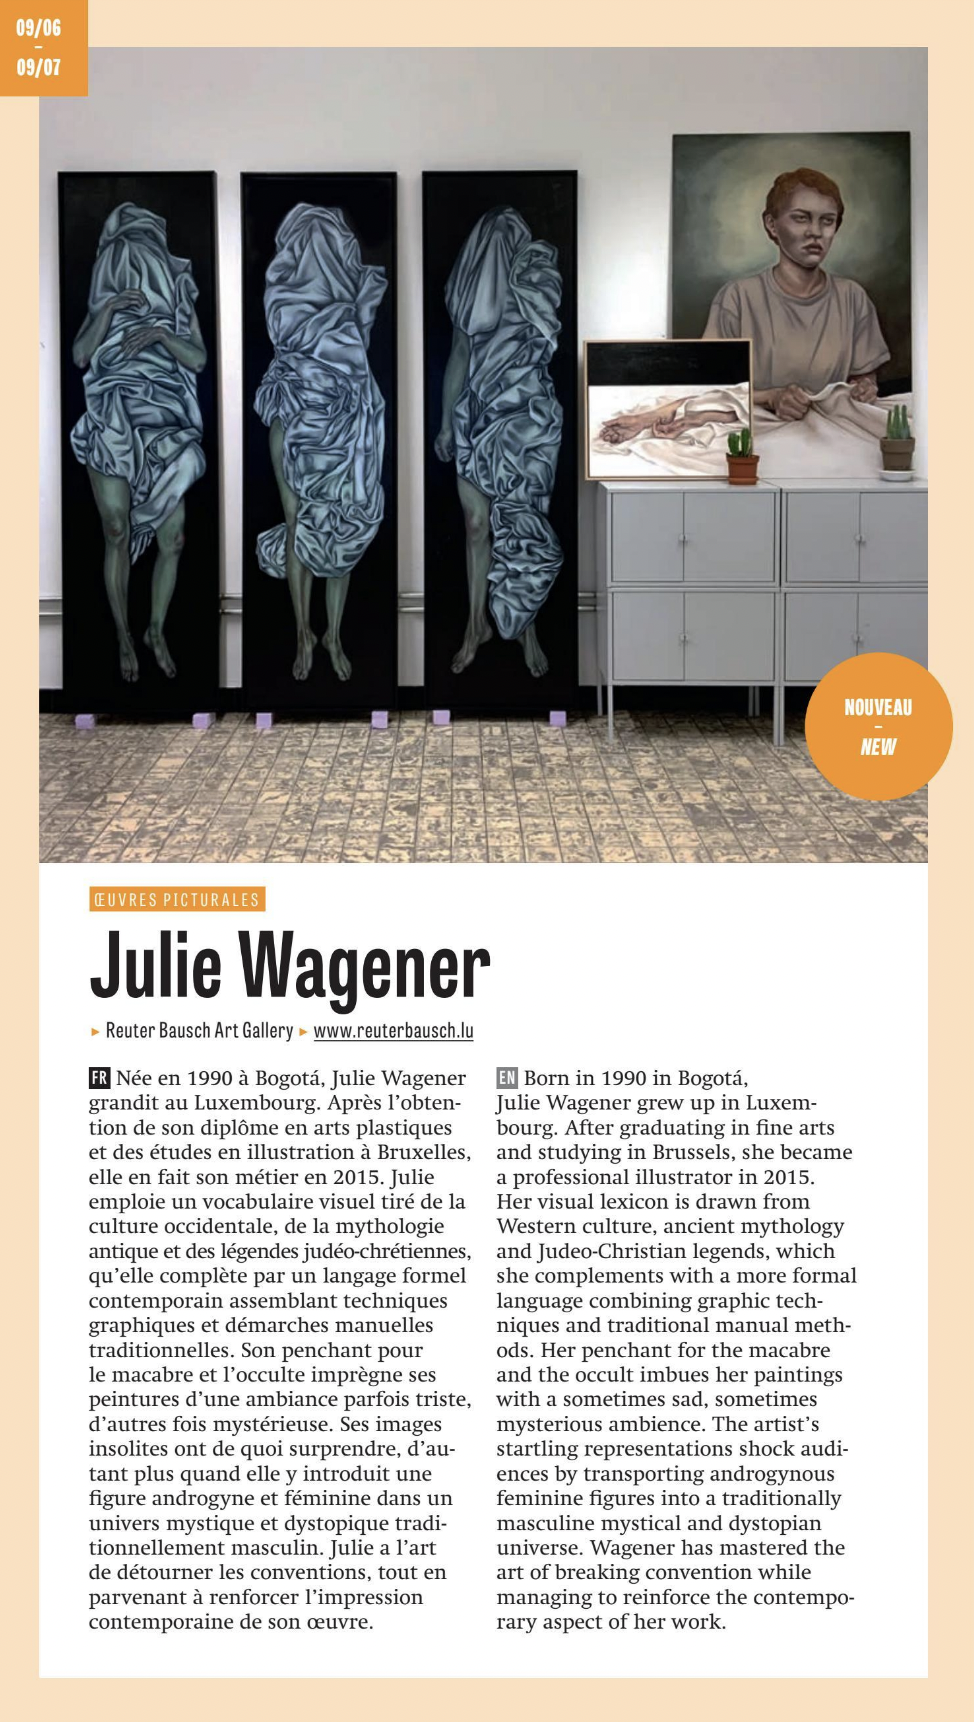 News of Reuter Bausch Art Gallery Julie Wagener